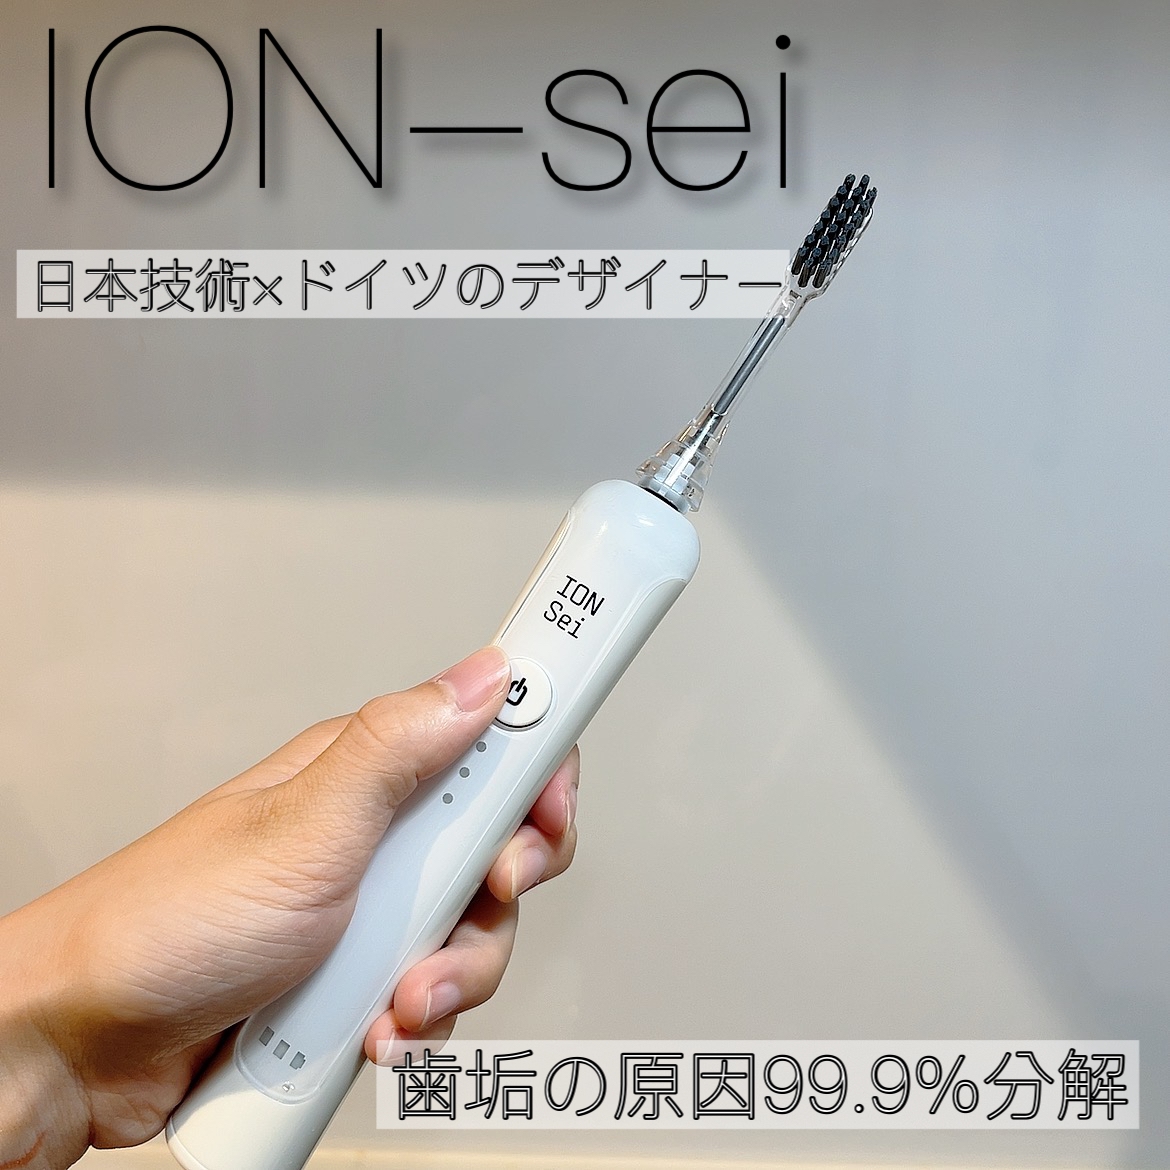 ION-Sei(イオン セイ) 電動歯ブラシの良い点・メリットに関するkhさんの口コミ画像1